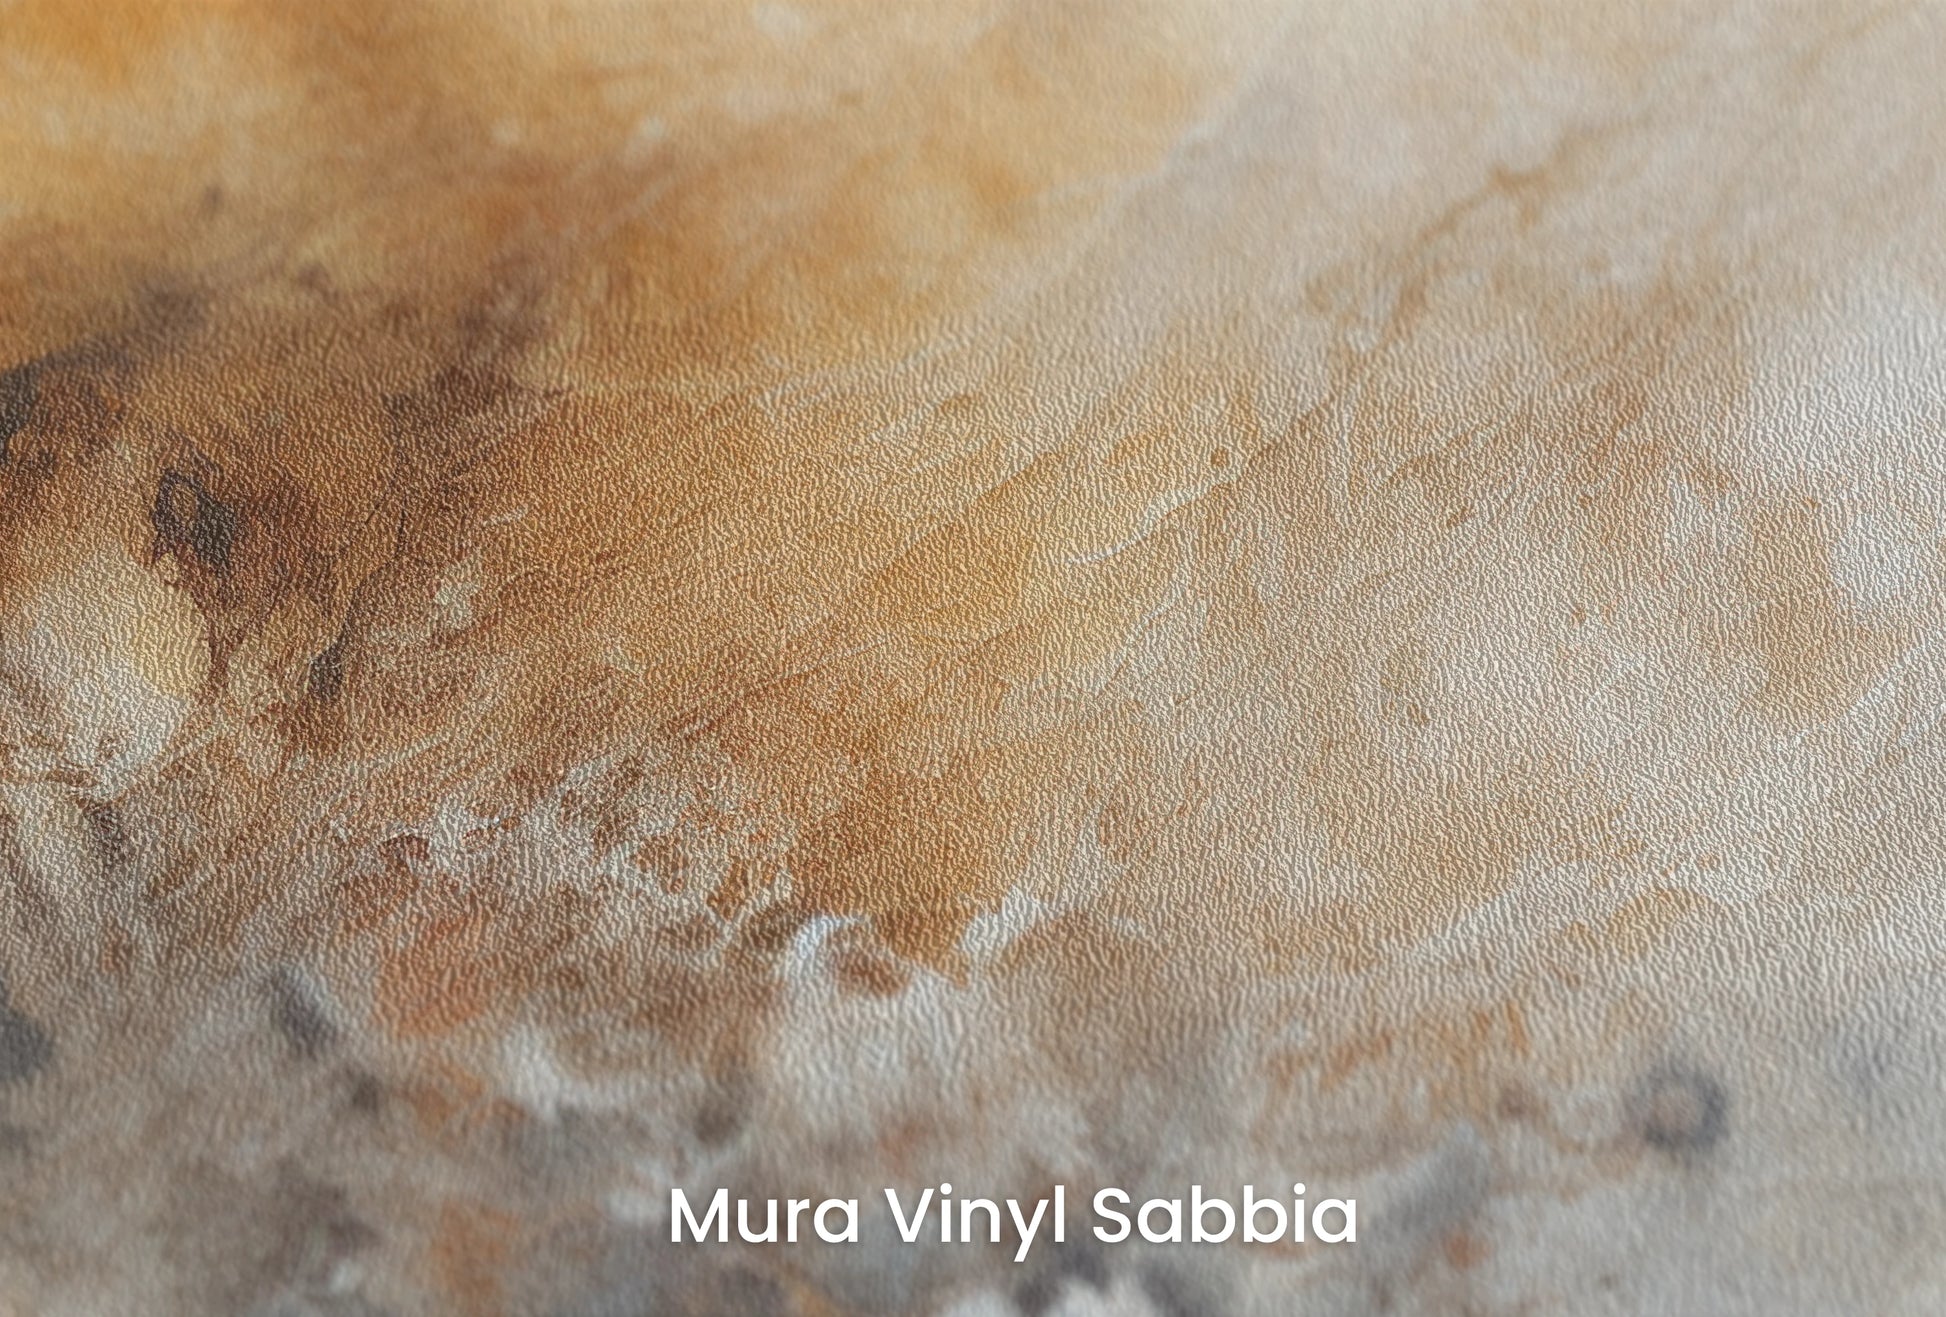 Zbliżenie na artystyczną fototapetę o nazwie Venusian Haze na podłożu Mura Vinyl Sabbia struktura grubego ziarna piasku.